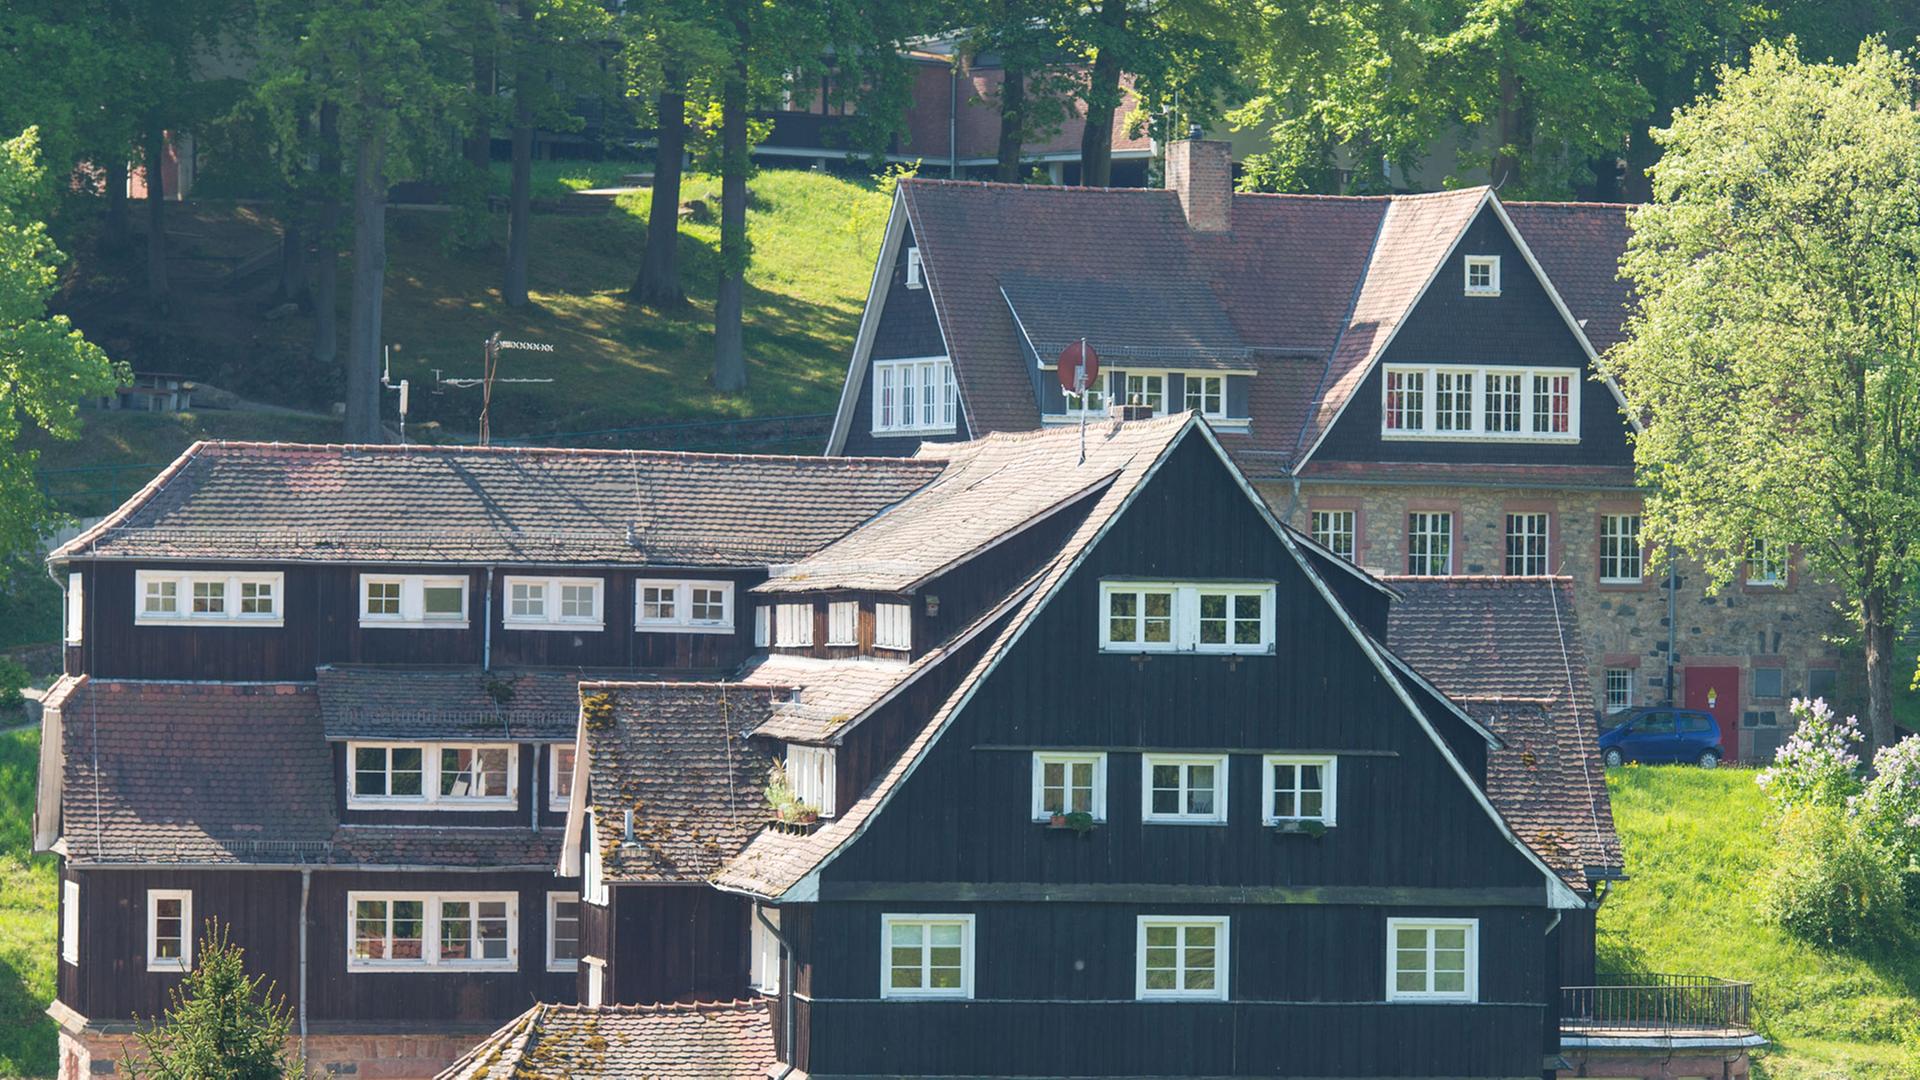 Wohnhäuser der Odenwaldschule in Heppenheim, Hessen, aufgenommen am 24.4.2014